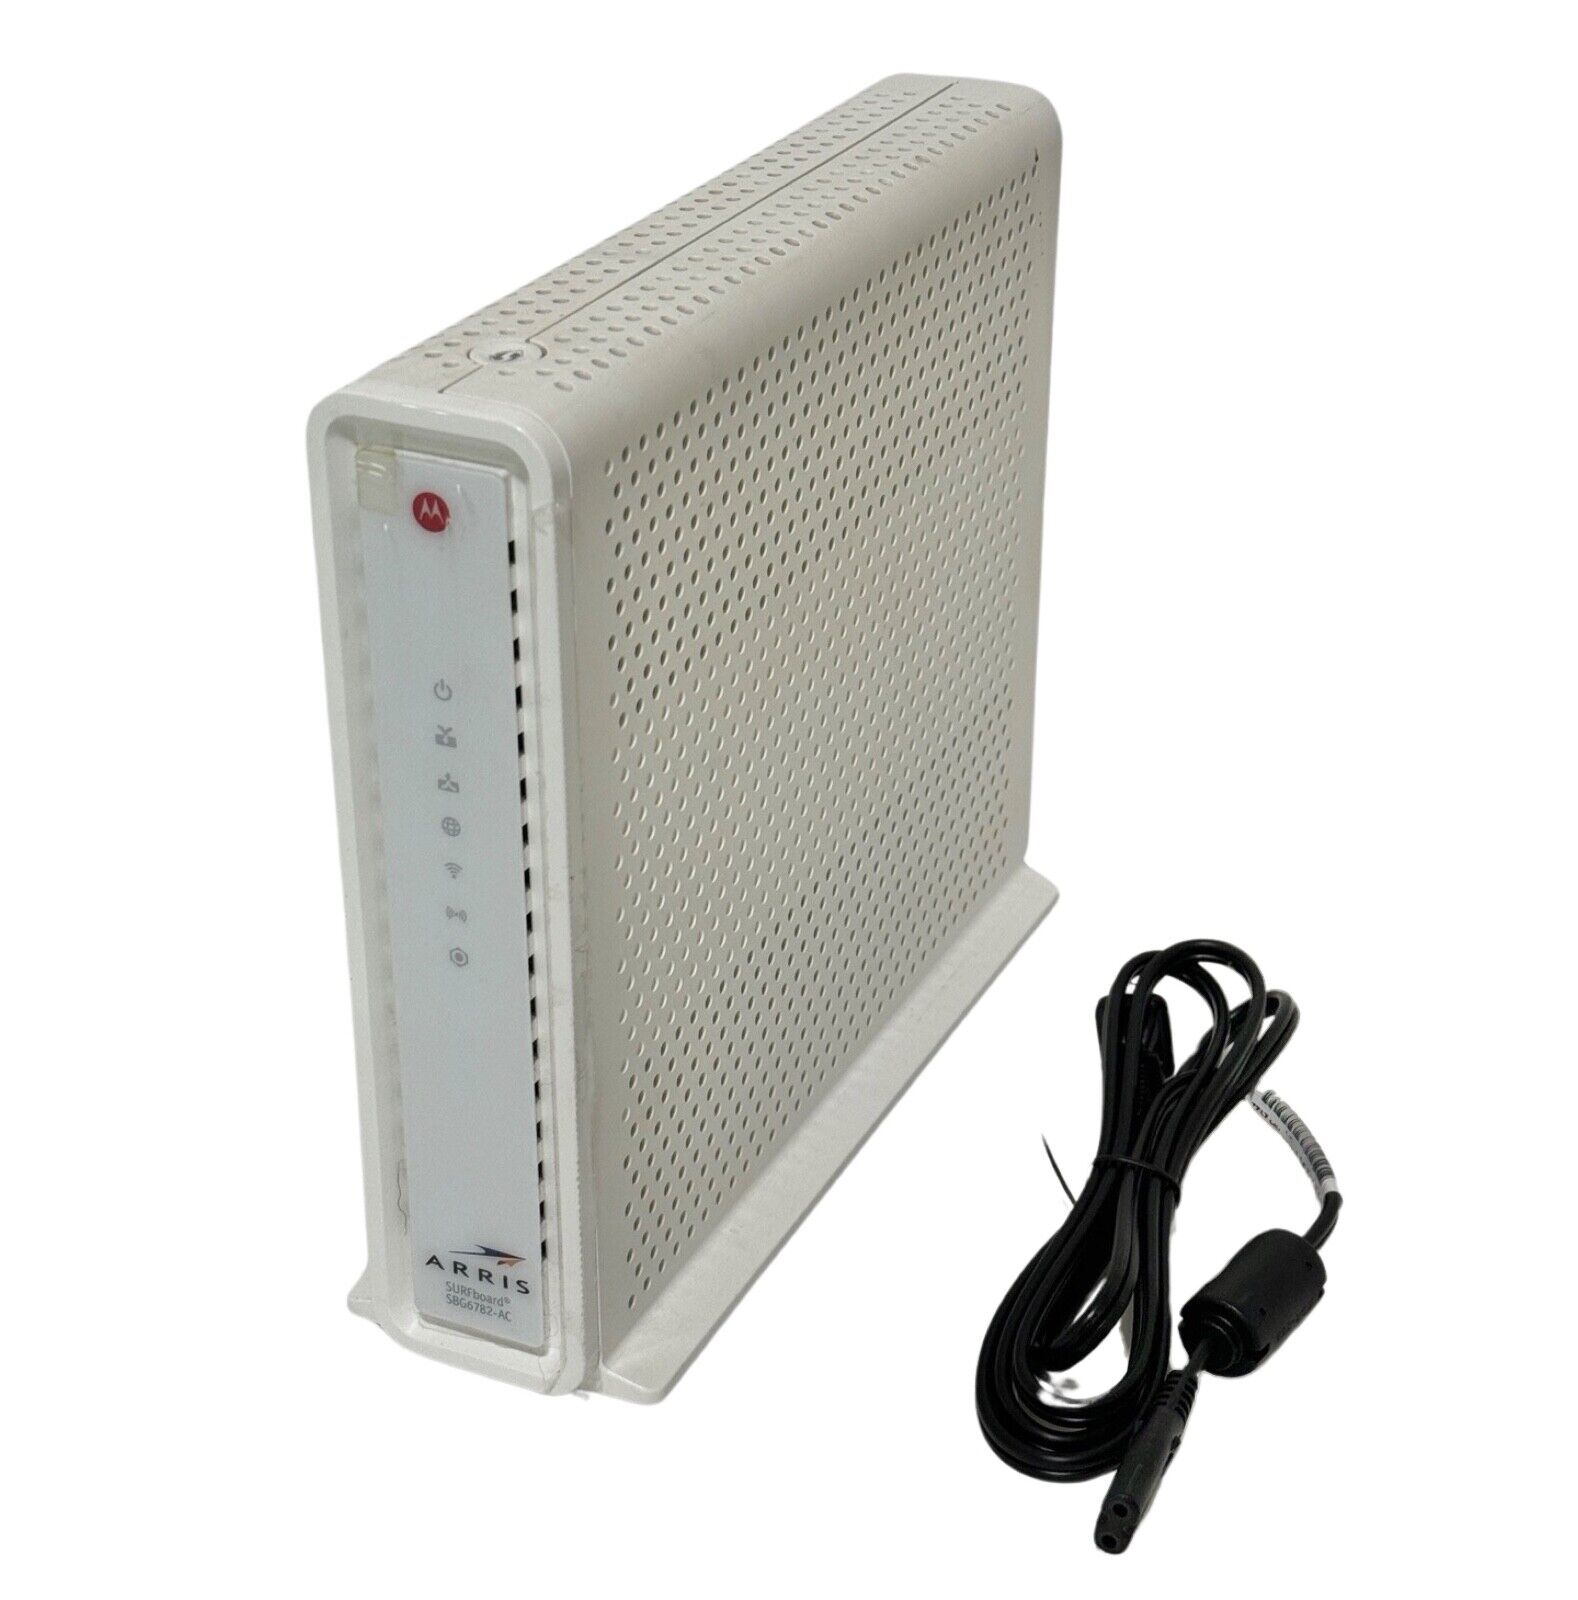 Motorola Arris SurfBoard SB6782-AC DOCSIS 3.0 Cable Modem Router